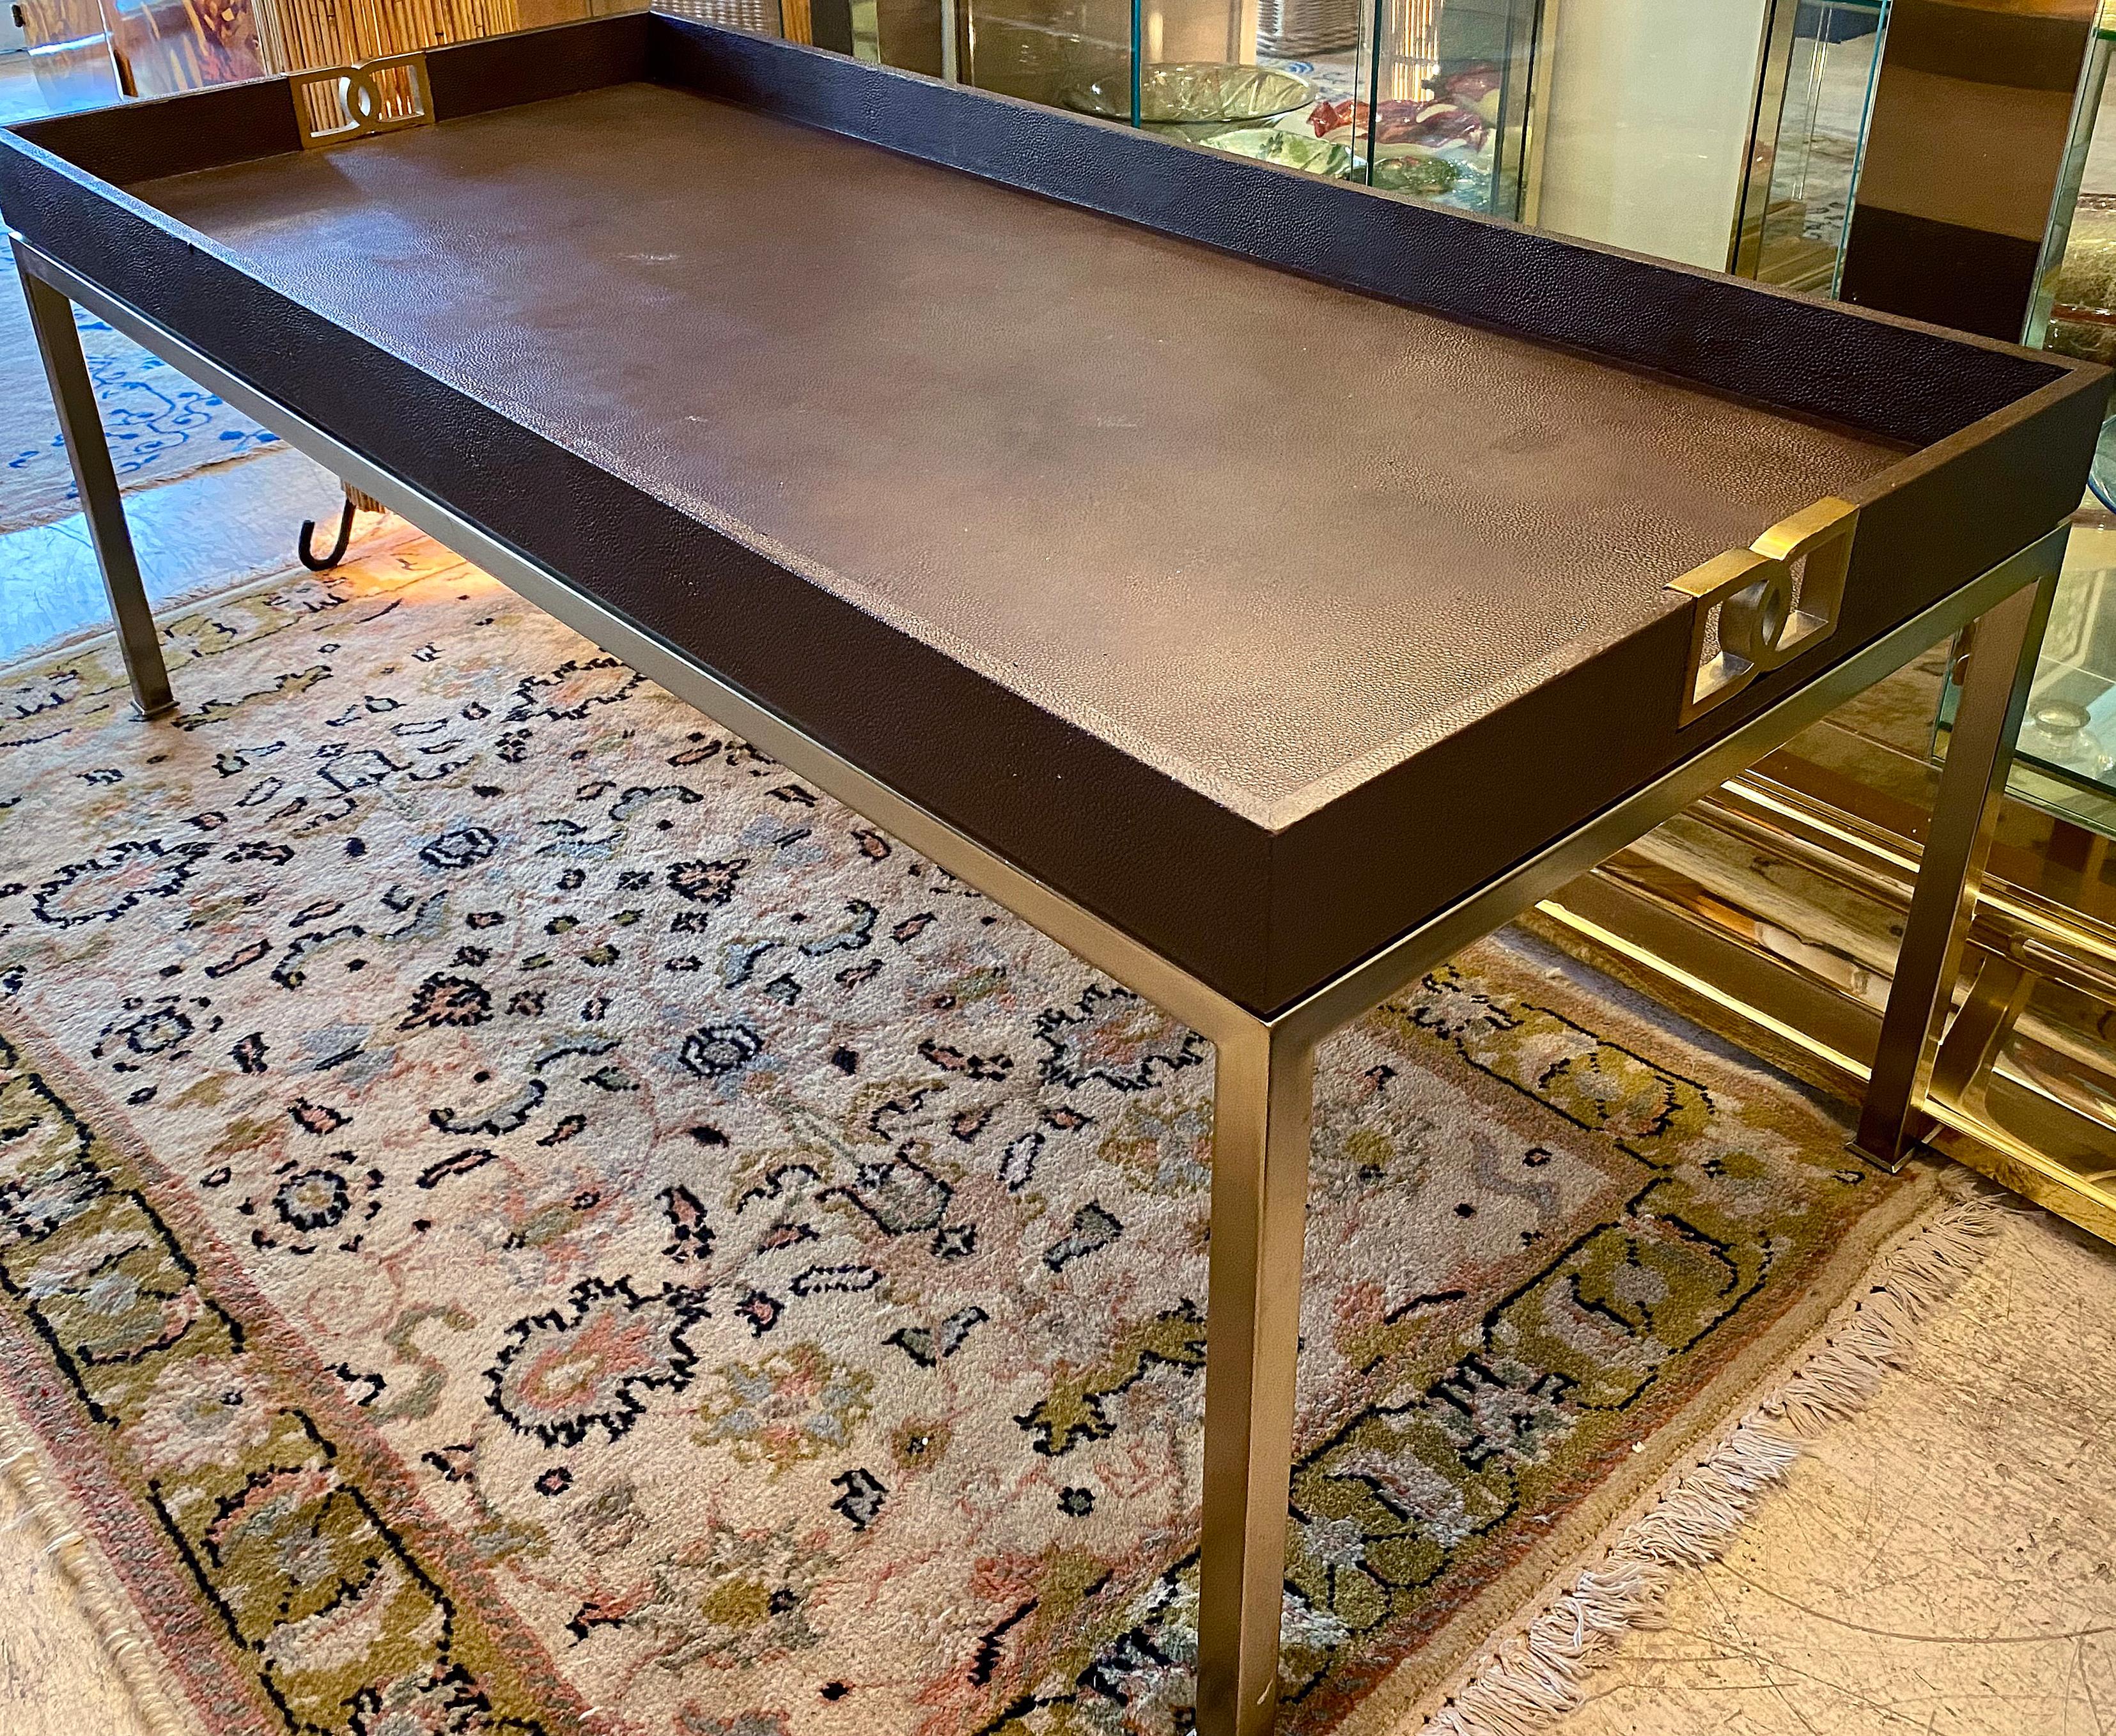 Zum Verkauf angeboten wird ein eleganter Bernhardt Couchtisch aus Kunstchagrin und Messing. Der Tisch hat dekorative Griffe an beiden Enden und eine Kunstlederplatte, die wie eine Tablettplatte aussieht. Der vertiefte Raum bietet eine Schiene, um